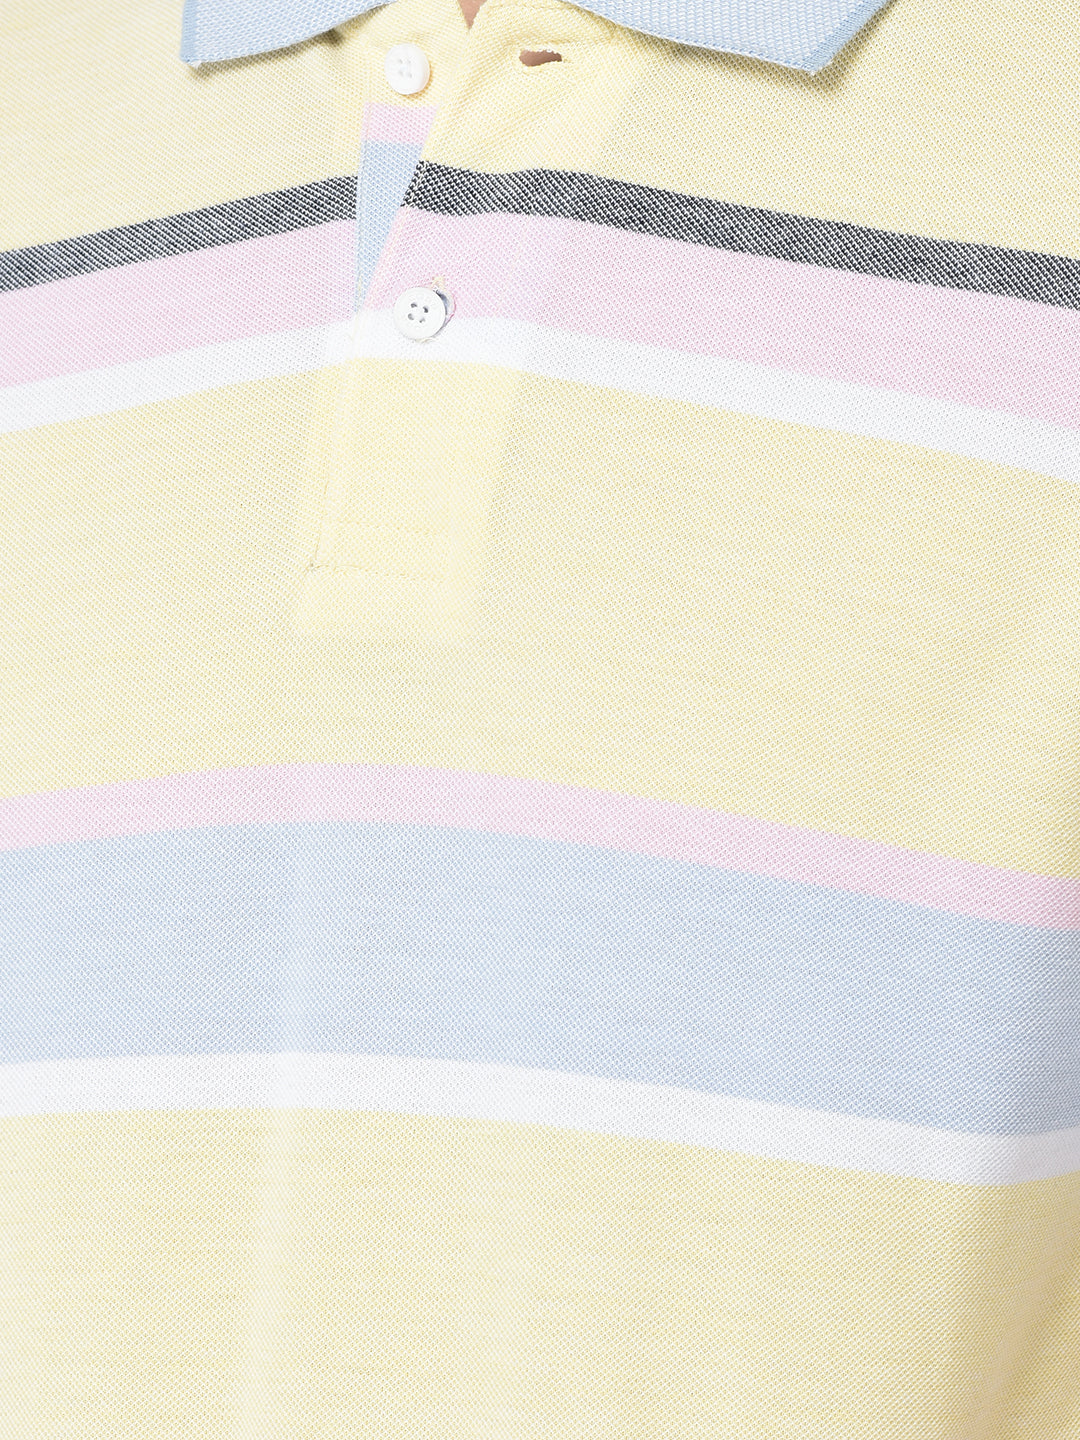 Cobb Lemon Striped Polo Neck T-Shirt